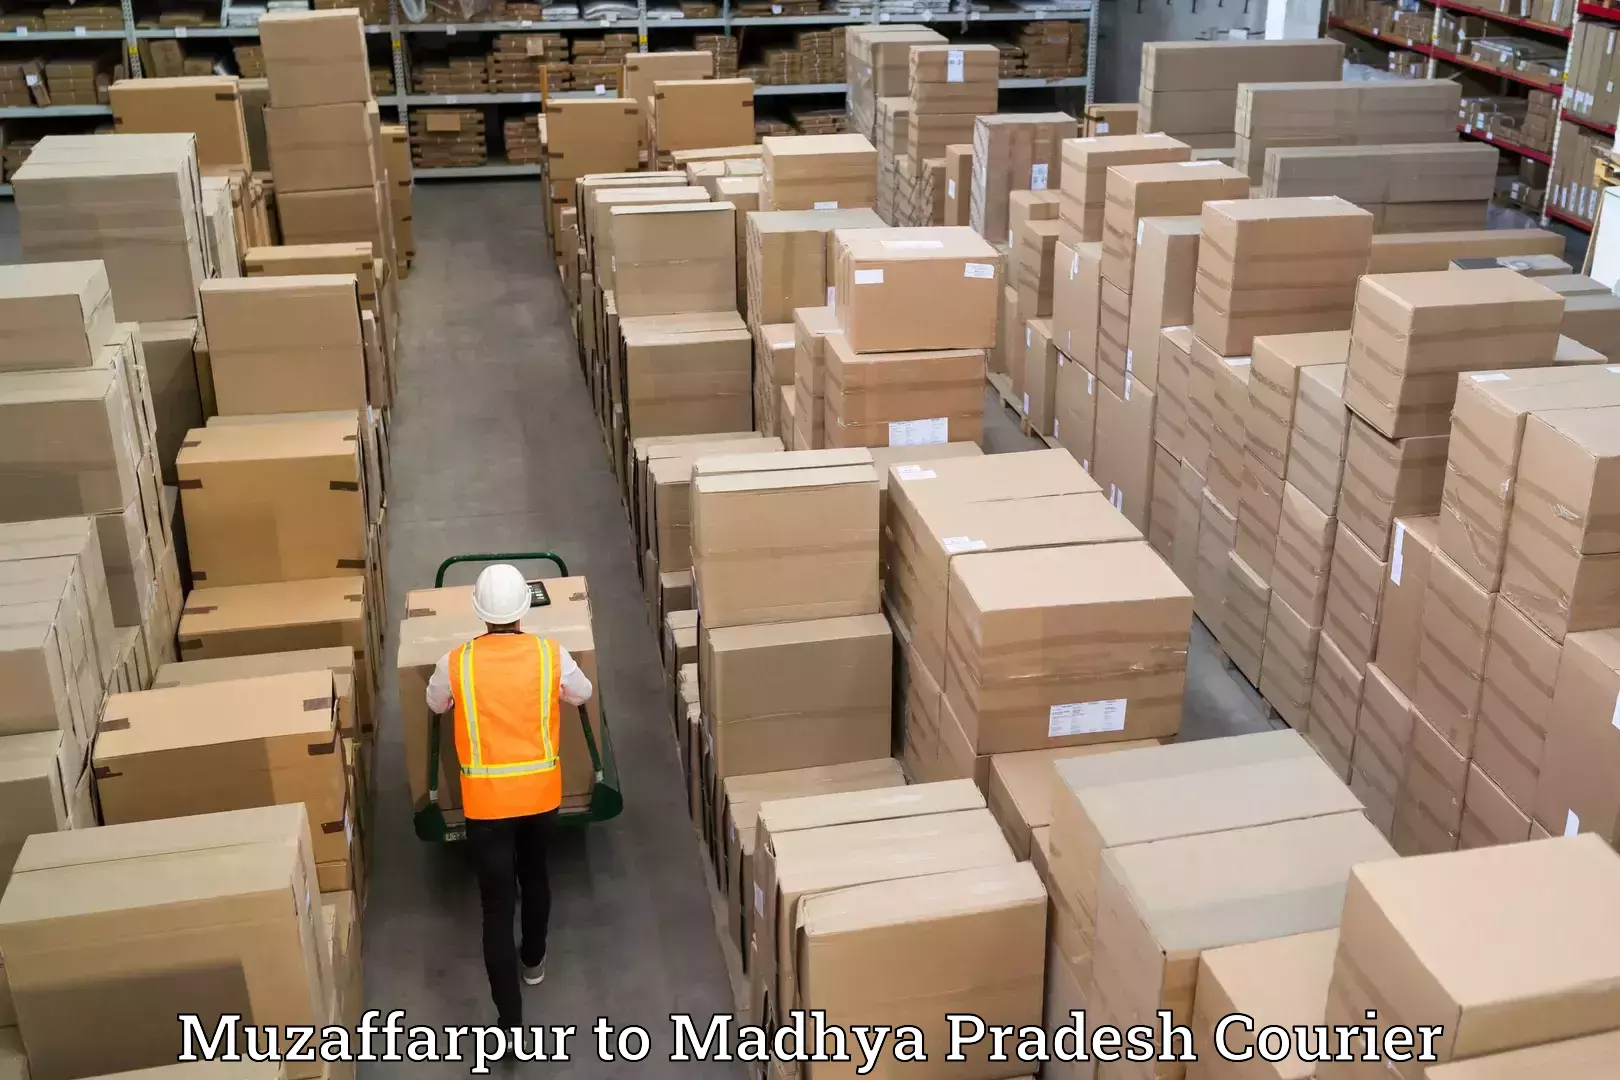 Moving and packing experts Muzaffarpur to Madhya Pradesh